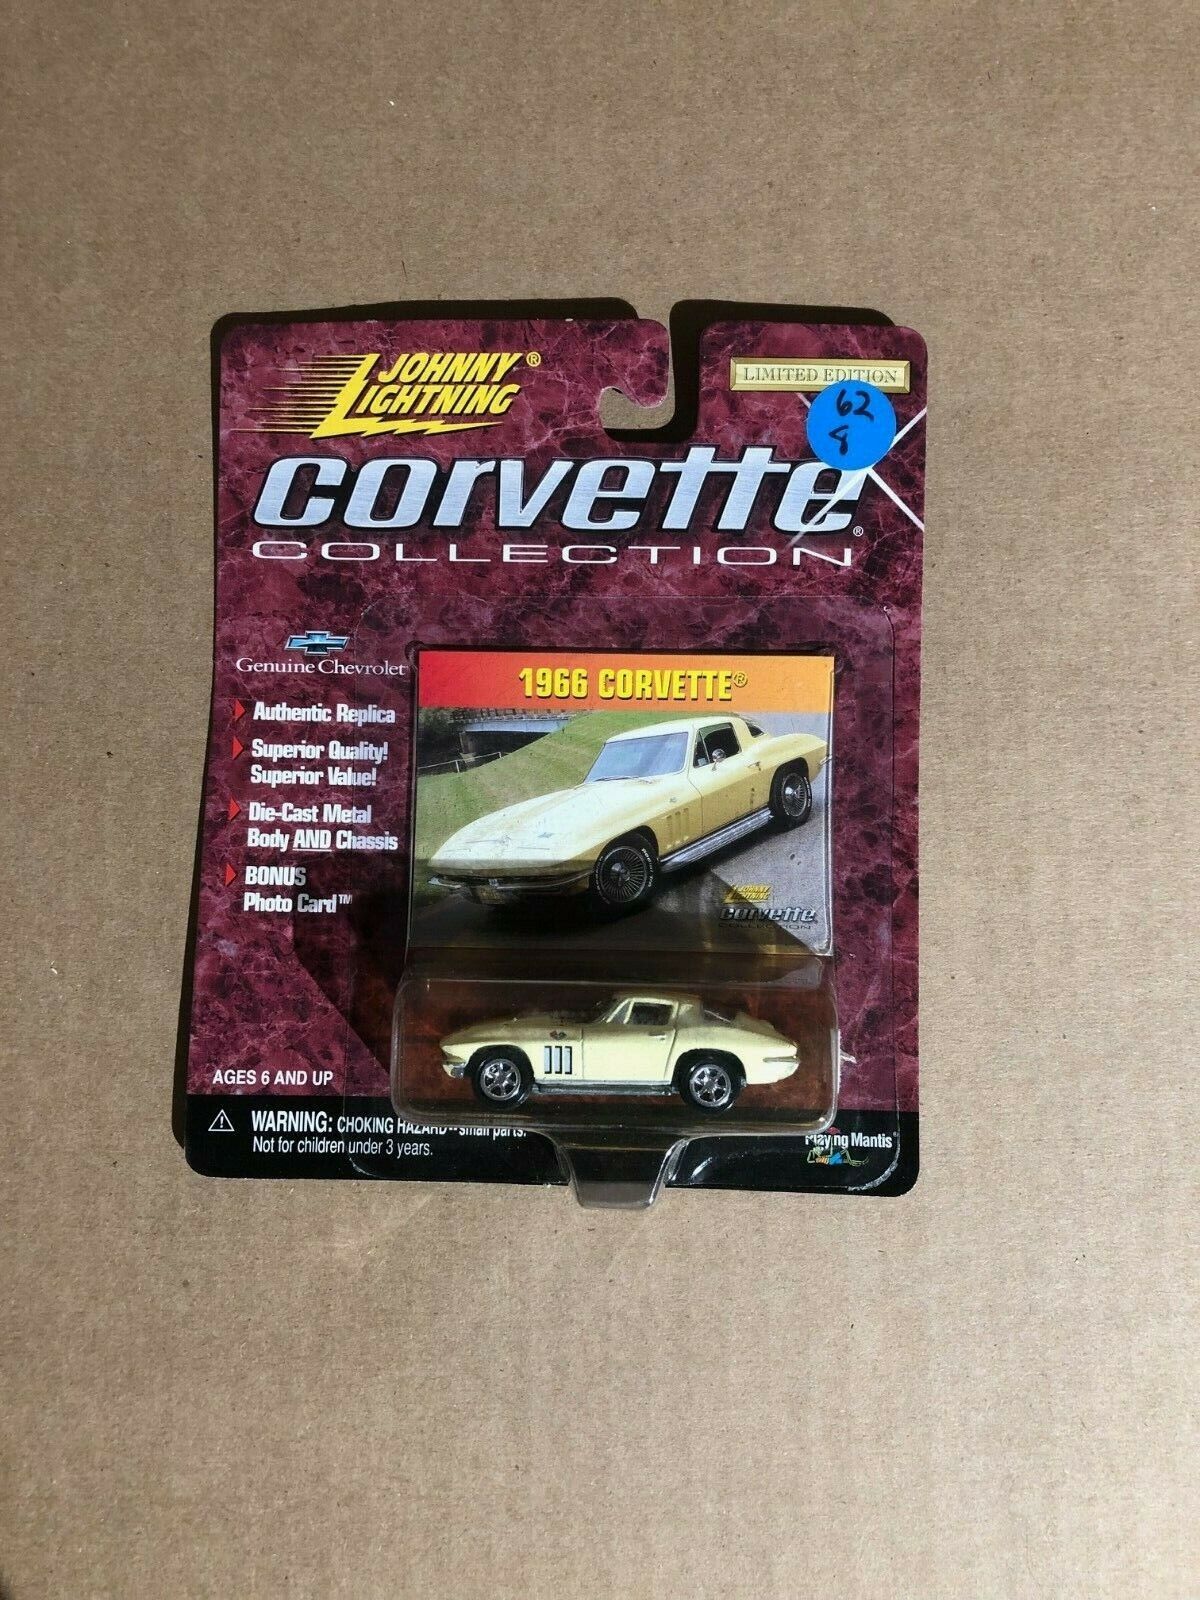 1966 Corvette Johnny Lightning Corvette Collection model toy car